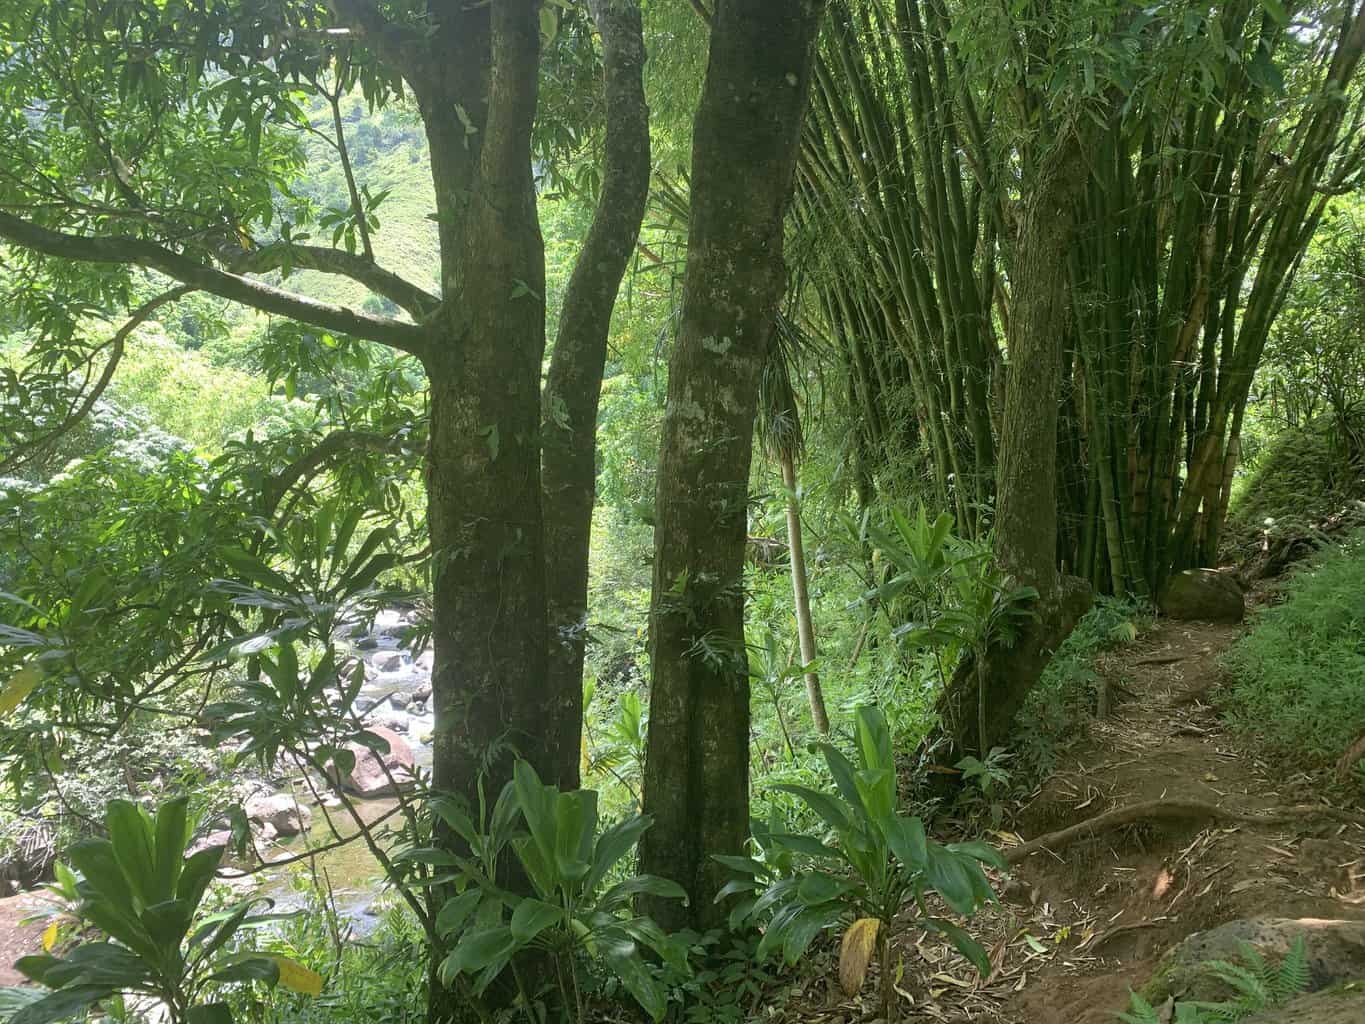 Hanakapiai Falls Trail